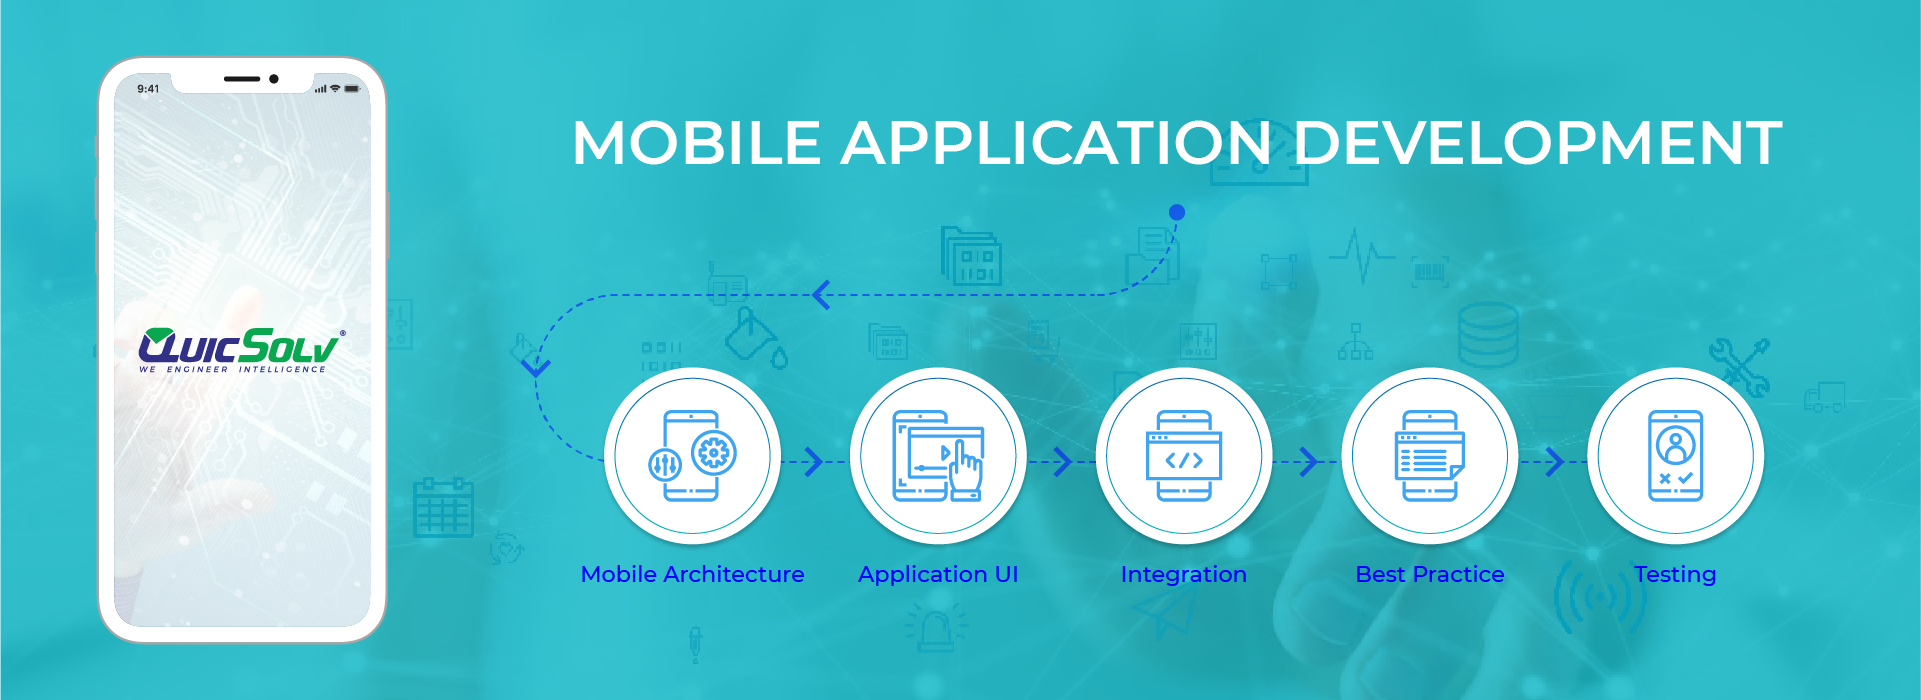 mobile-application-development-banner